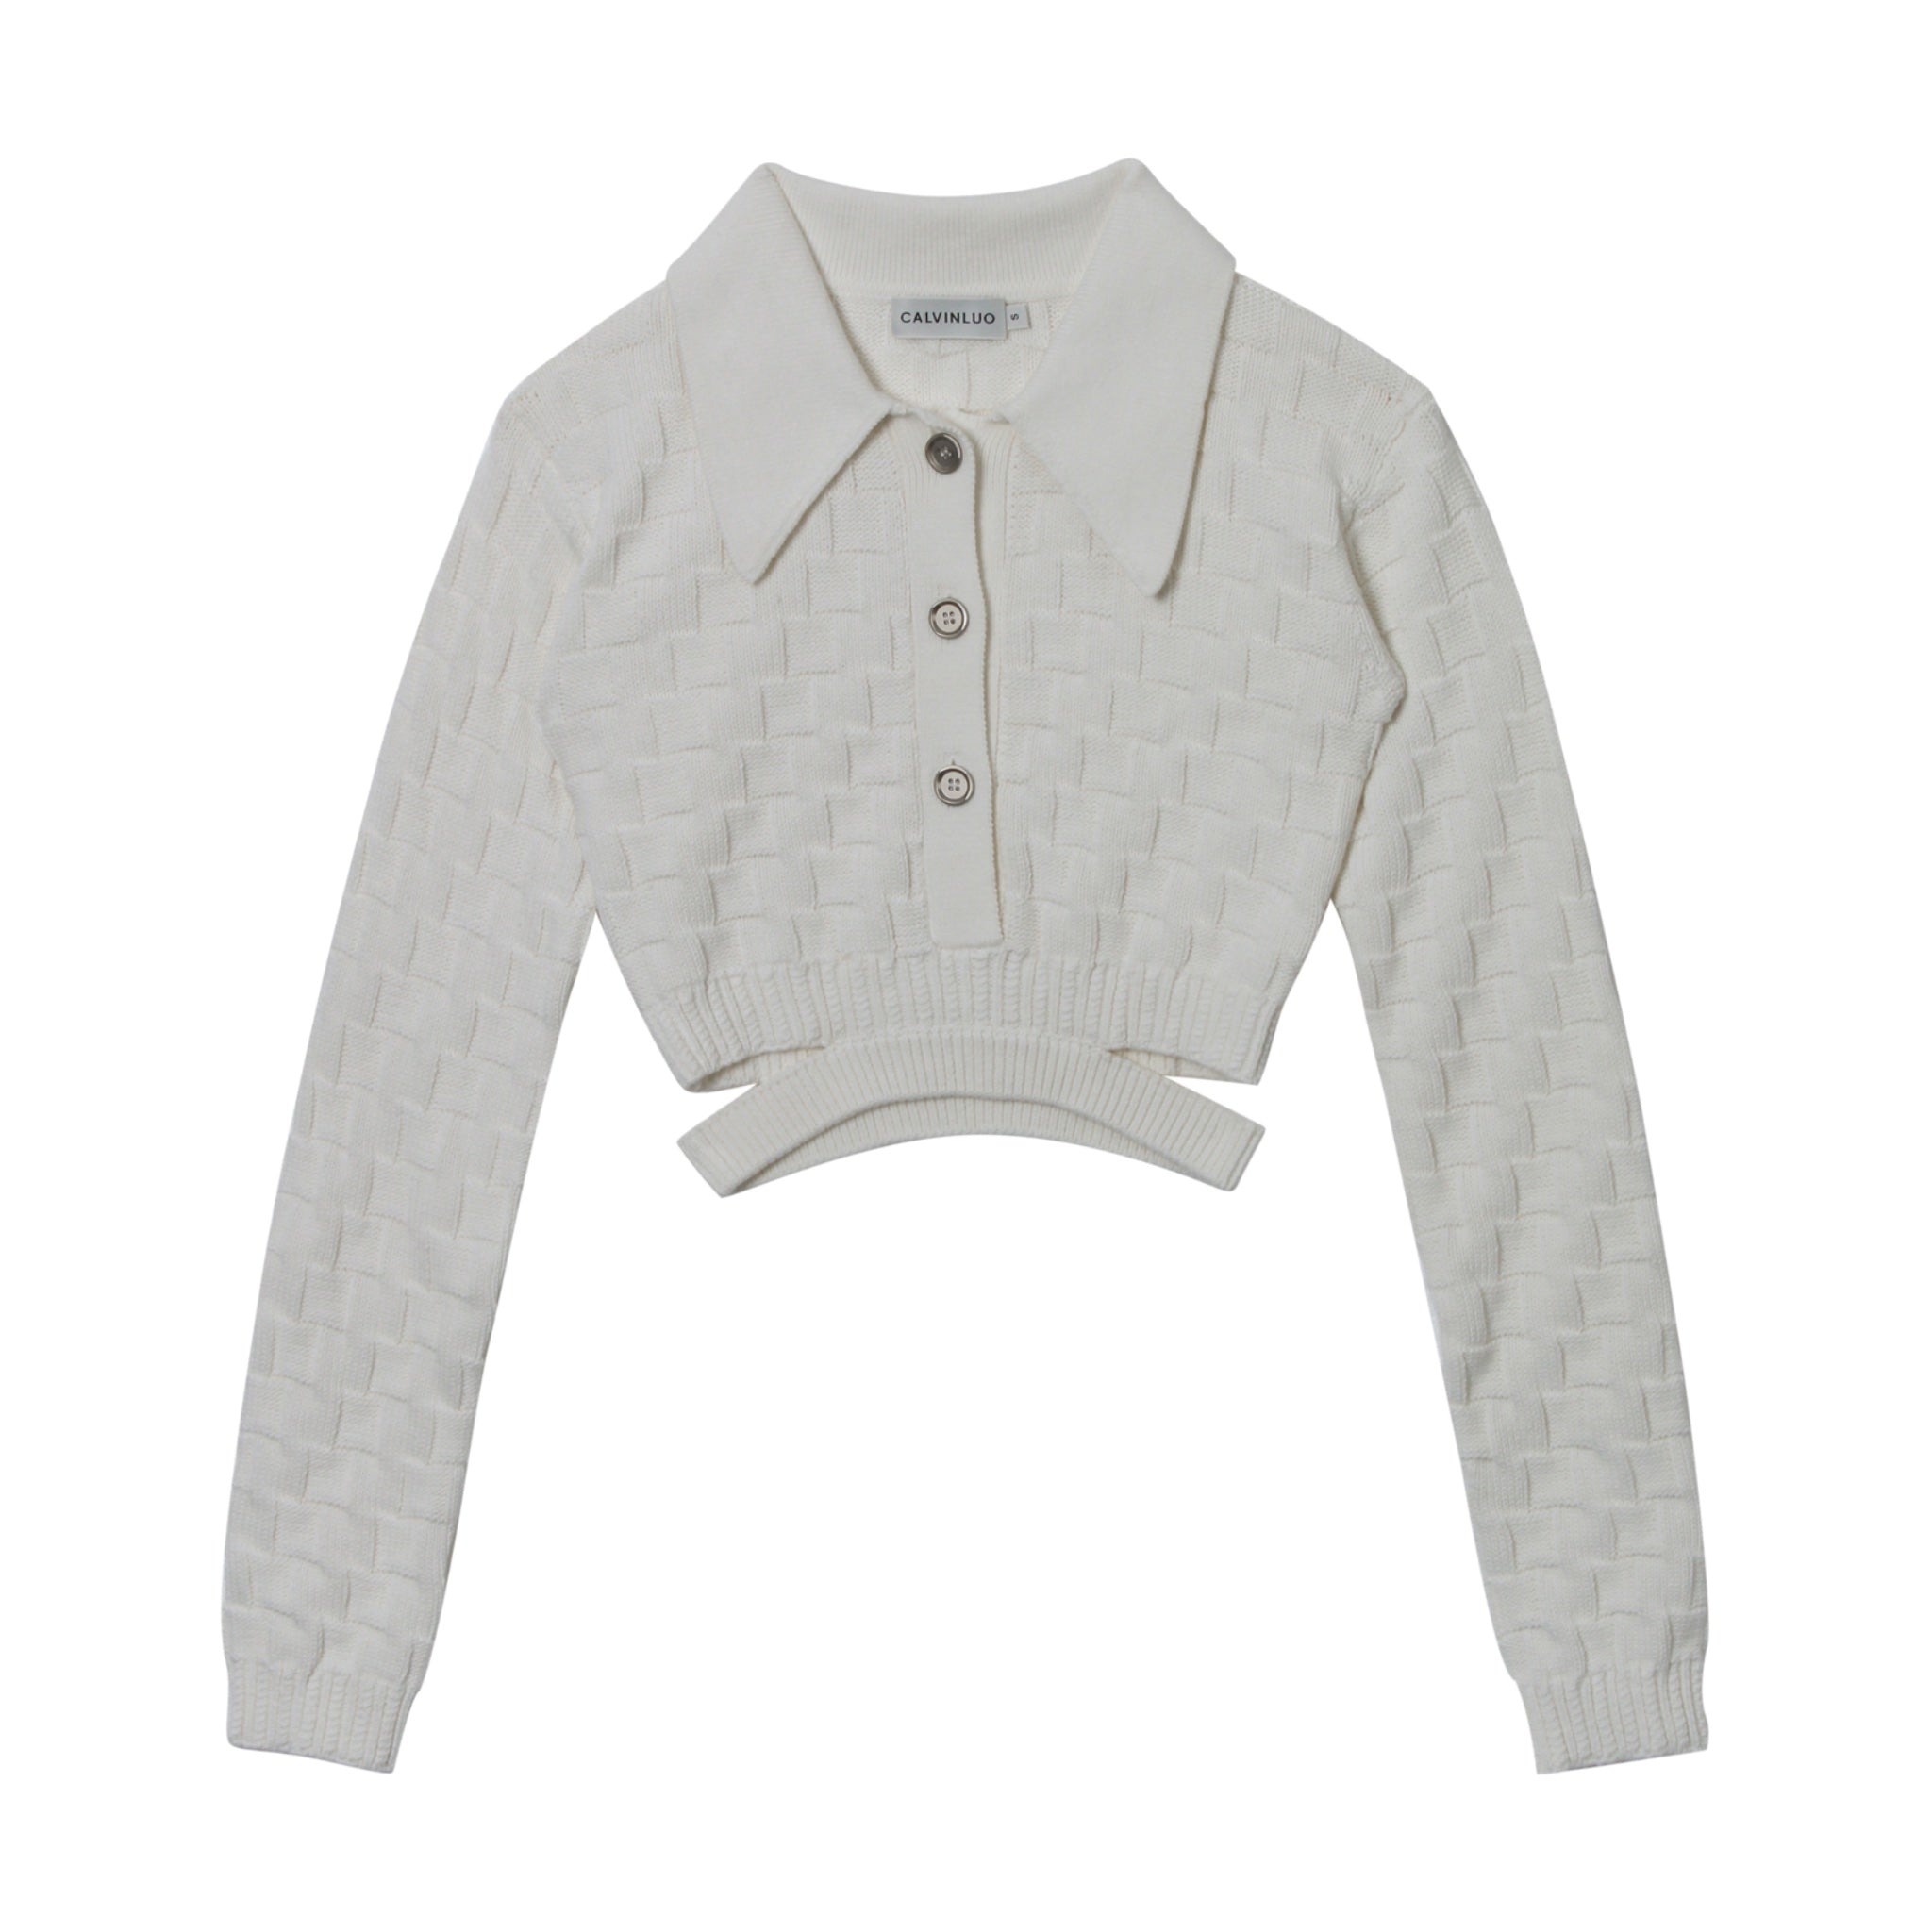 White Waist Deconstructed Shirt Collar Knit Top